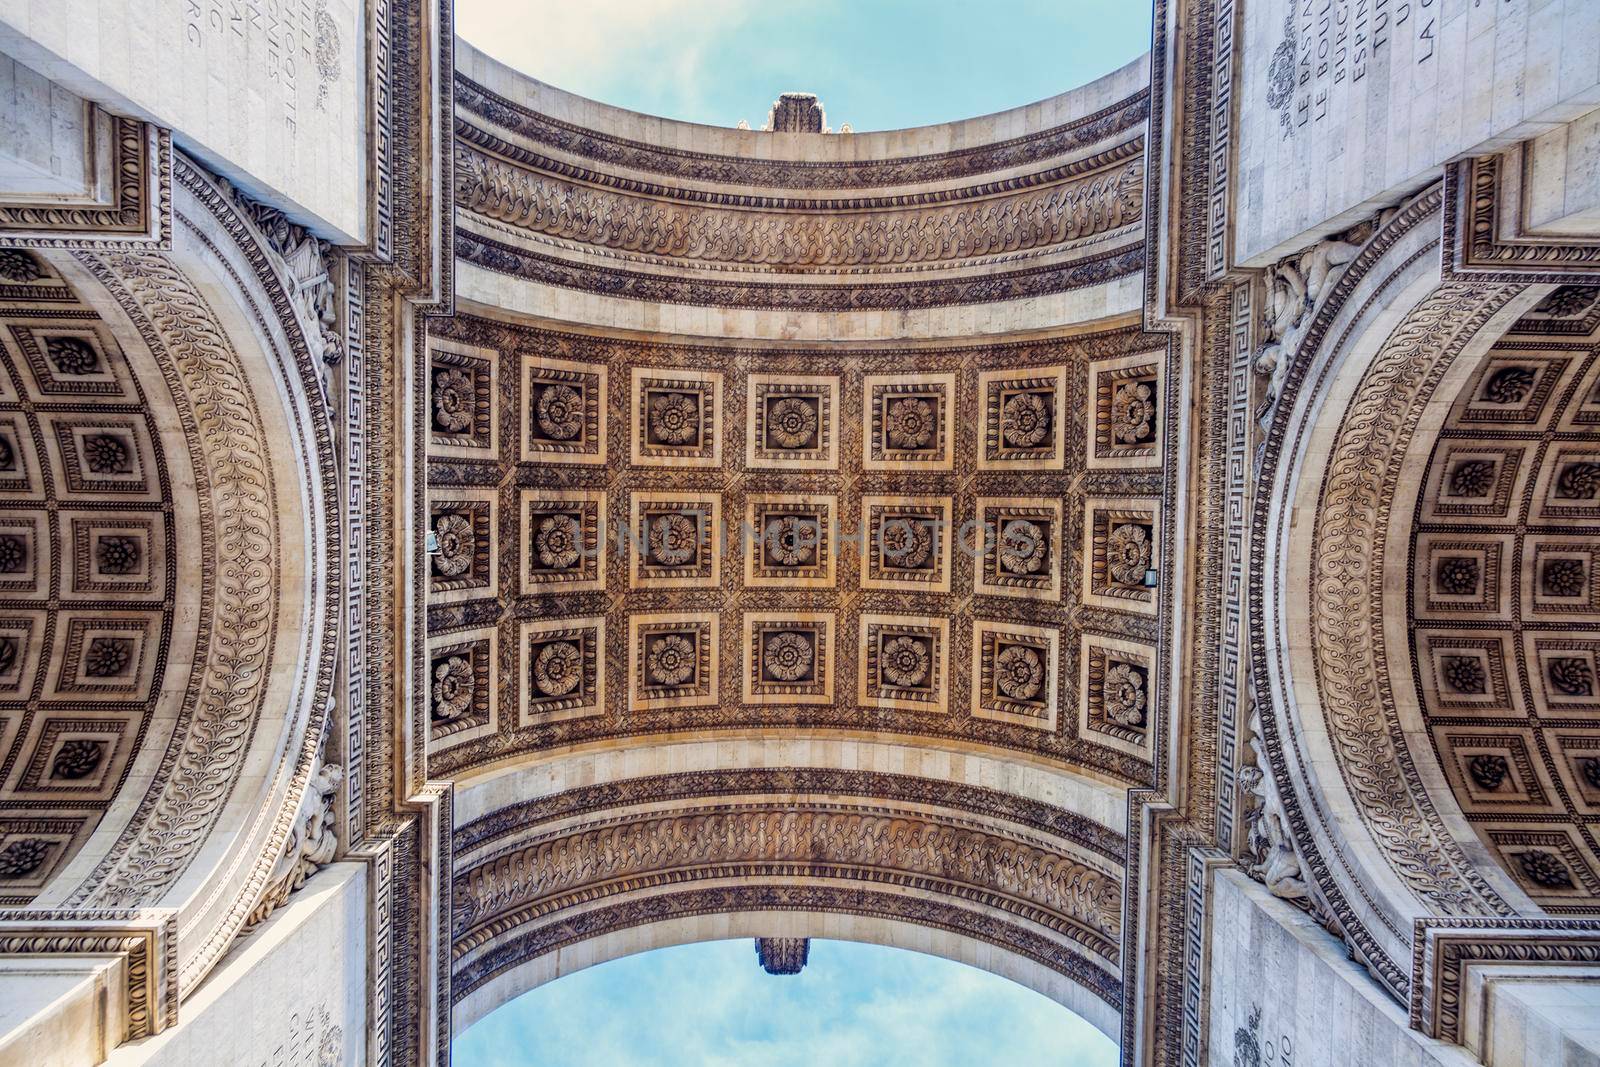 Arc de Triomphe in Paris. Paris, France